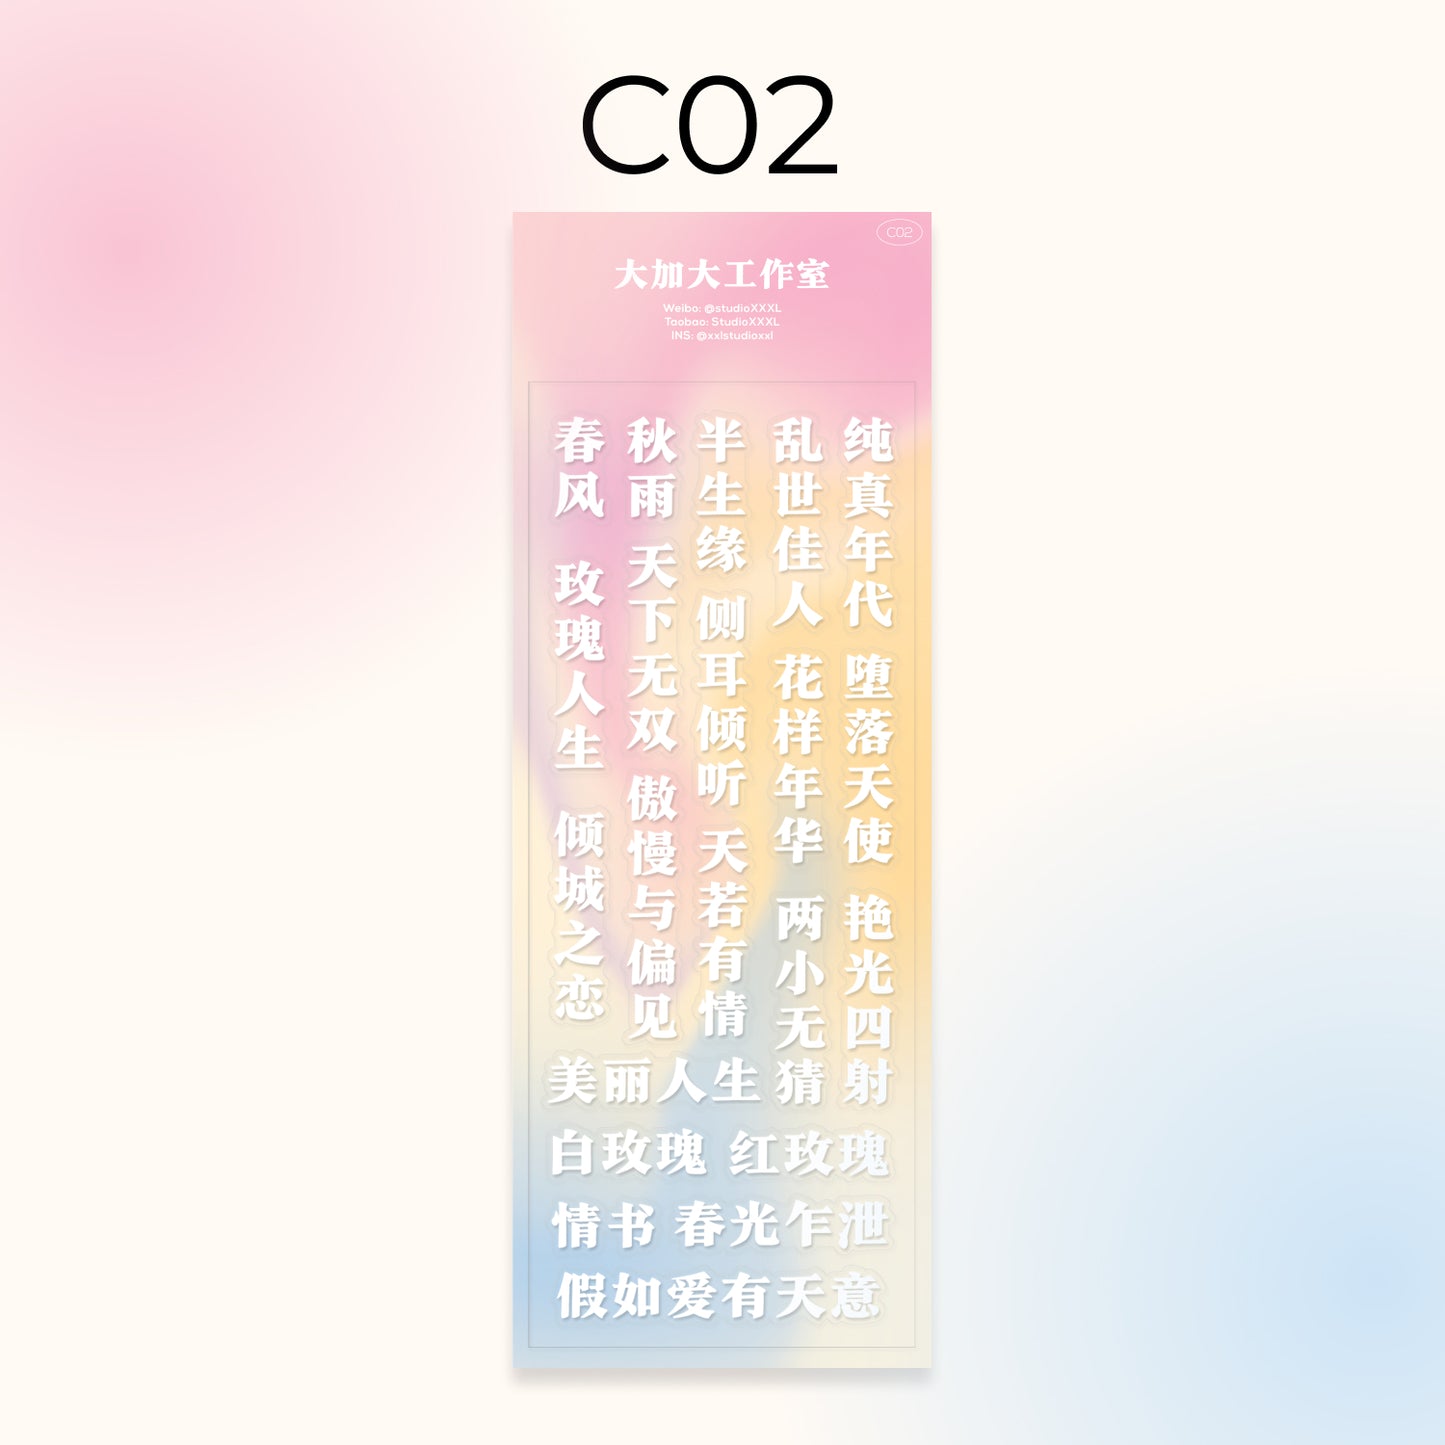 [StudioXXXL] Chinese Text (9 types)